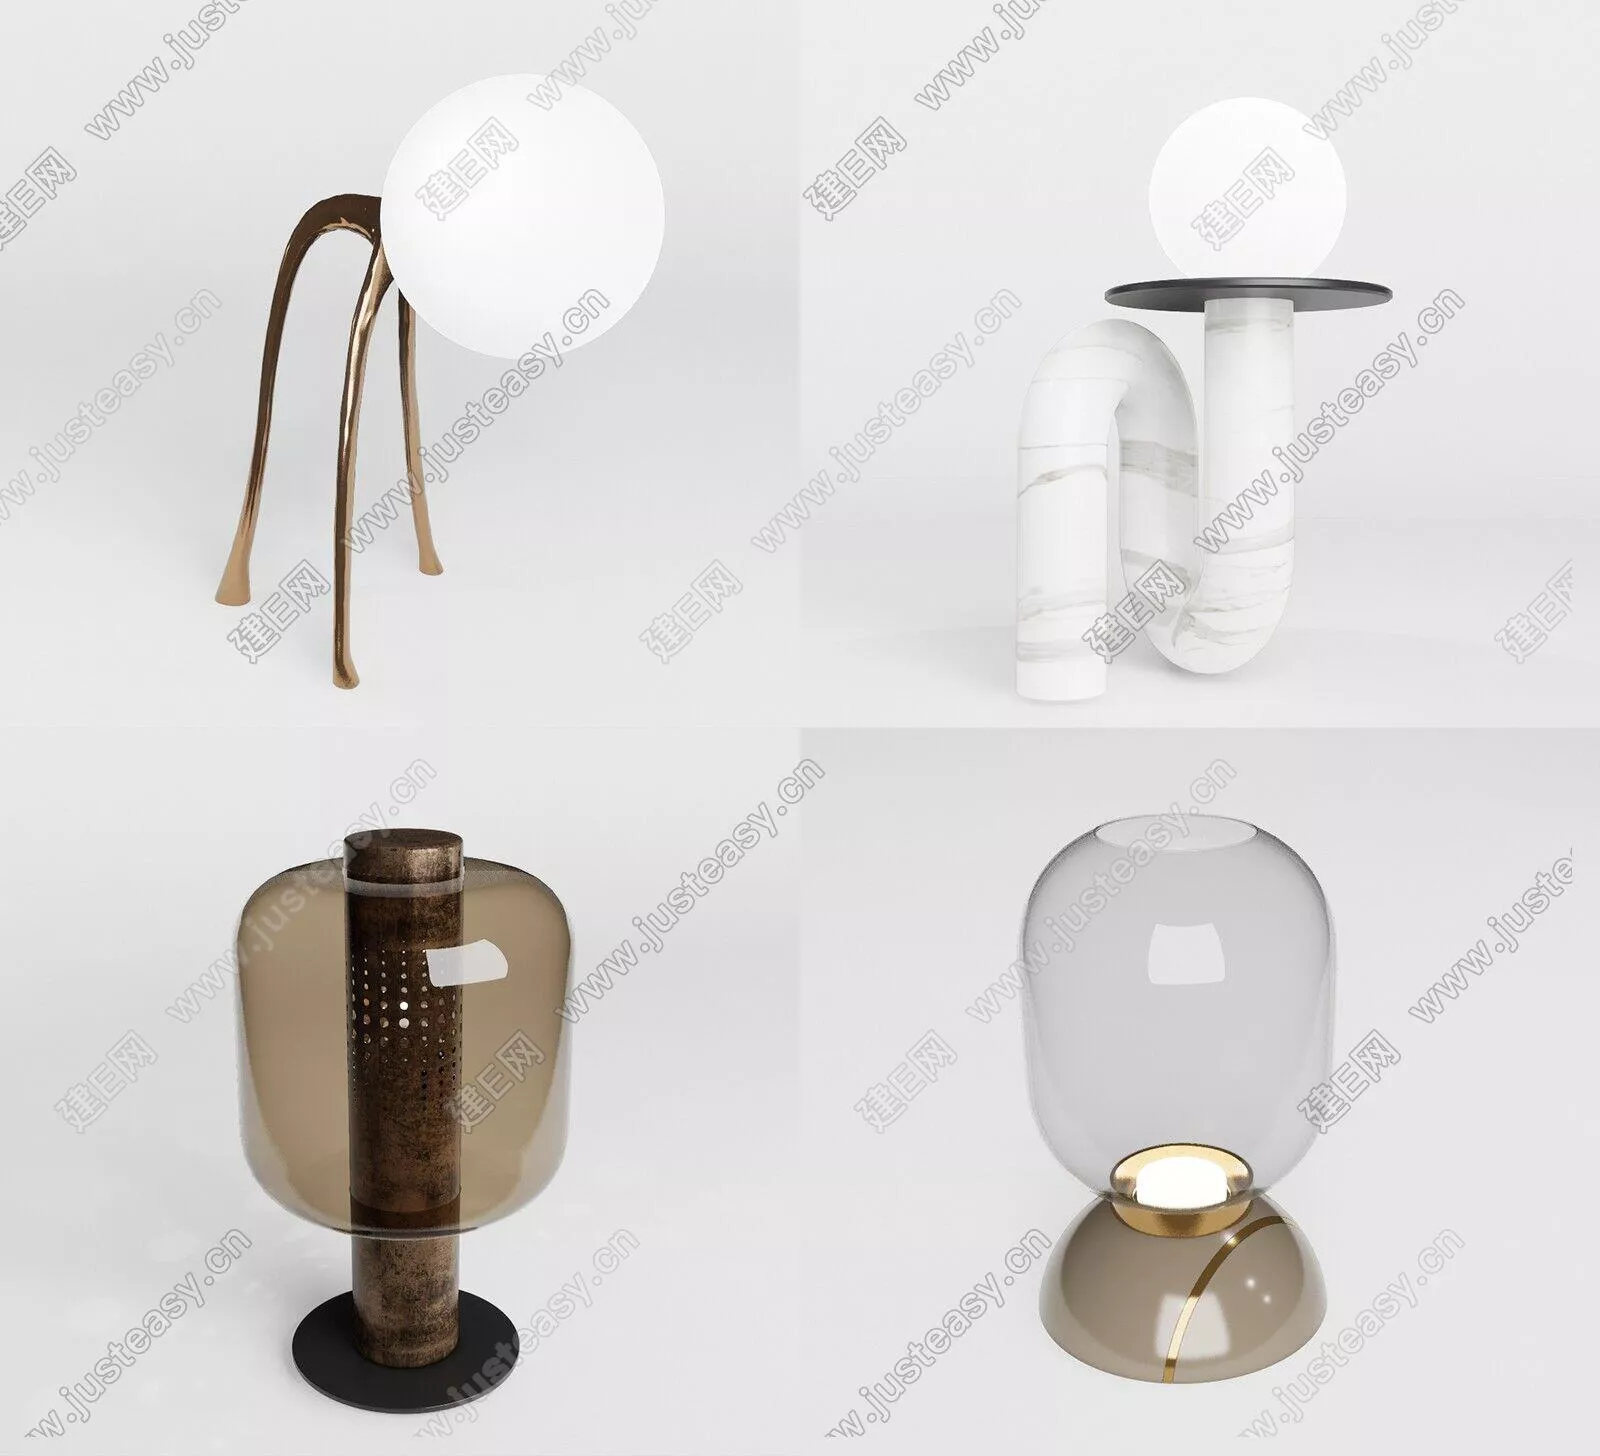 MODERN TABLE LAMP - SKETCHUP 3D MODEL - ENSCAPE - 116540029